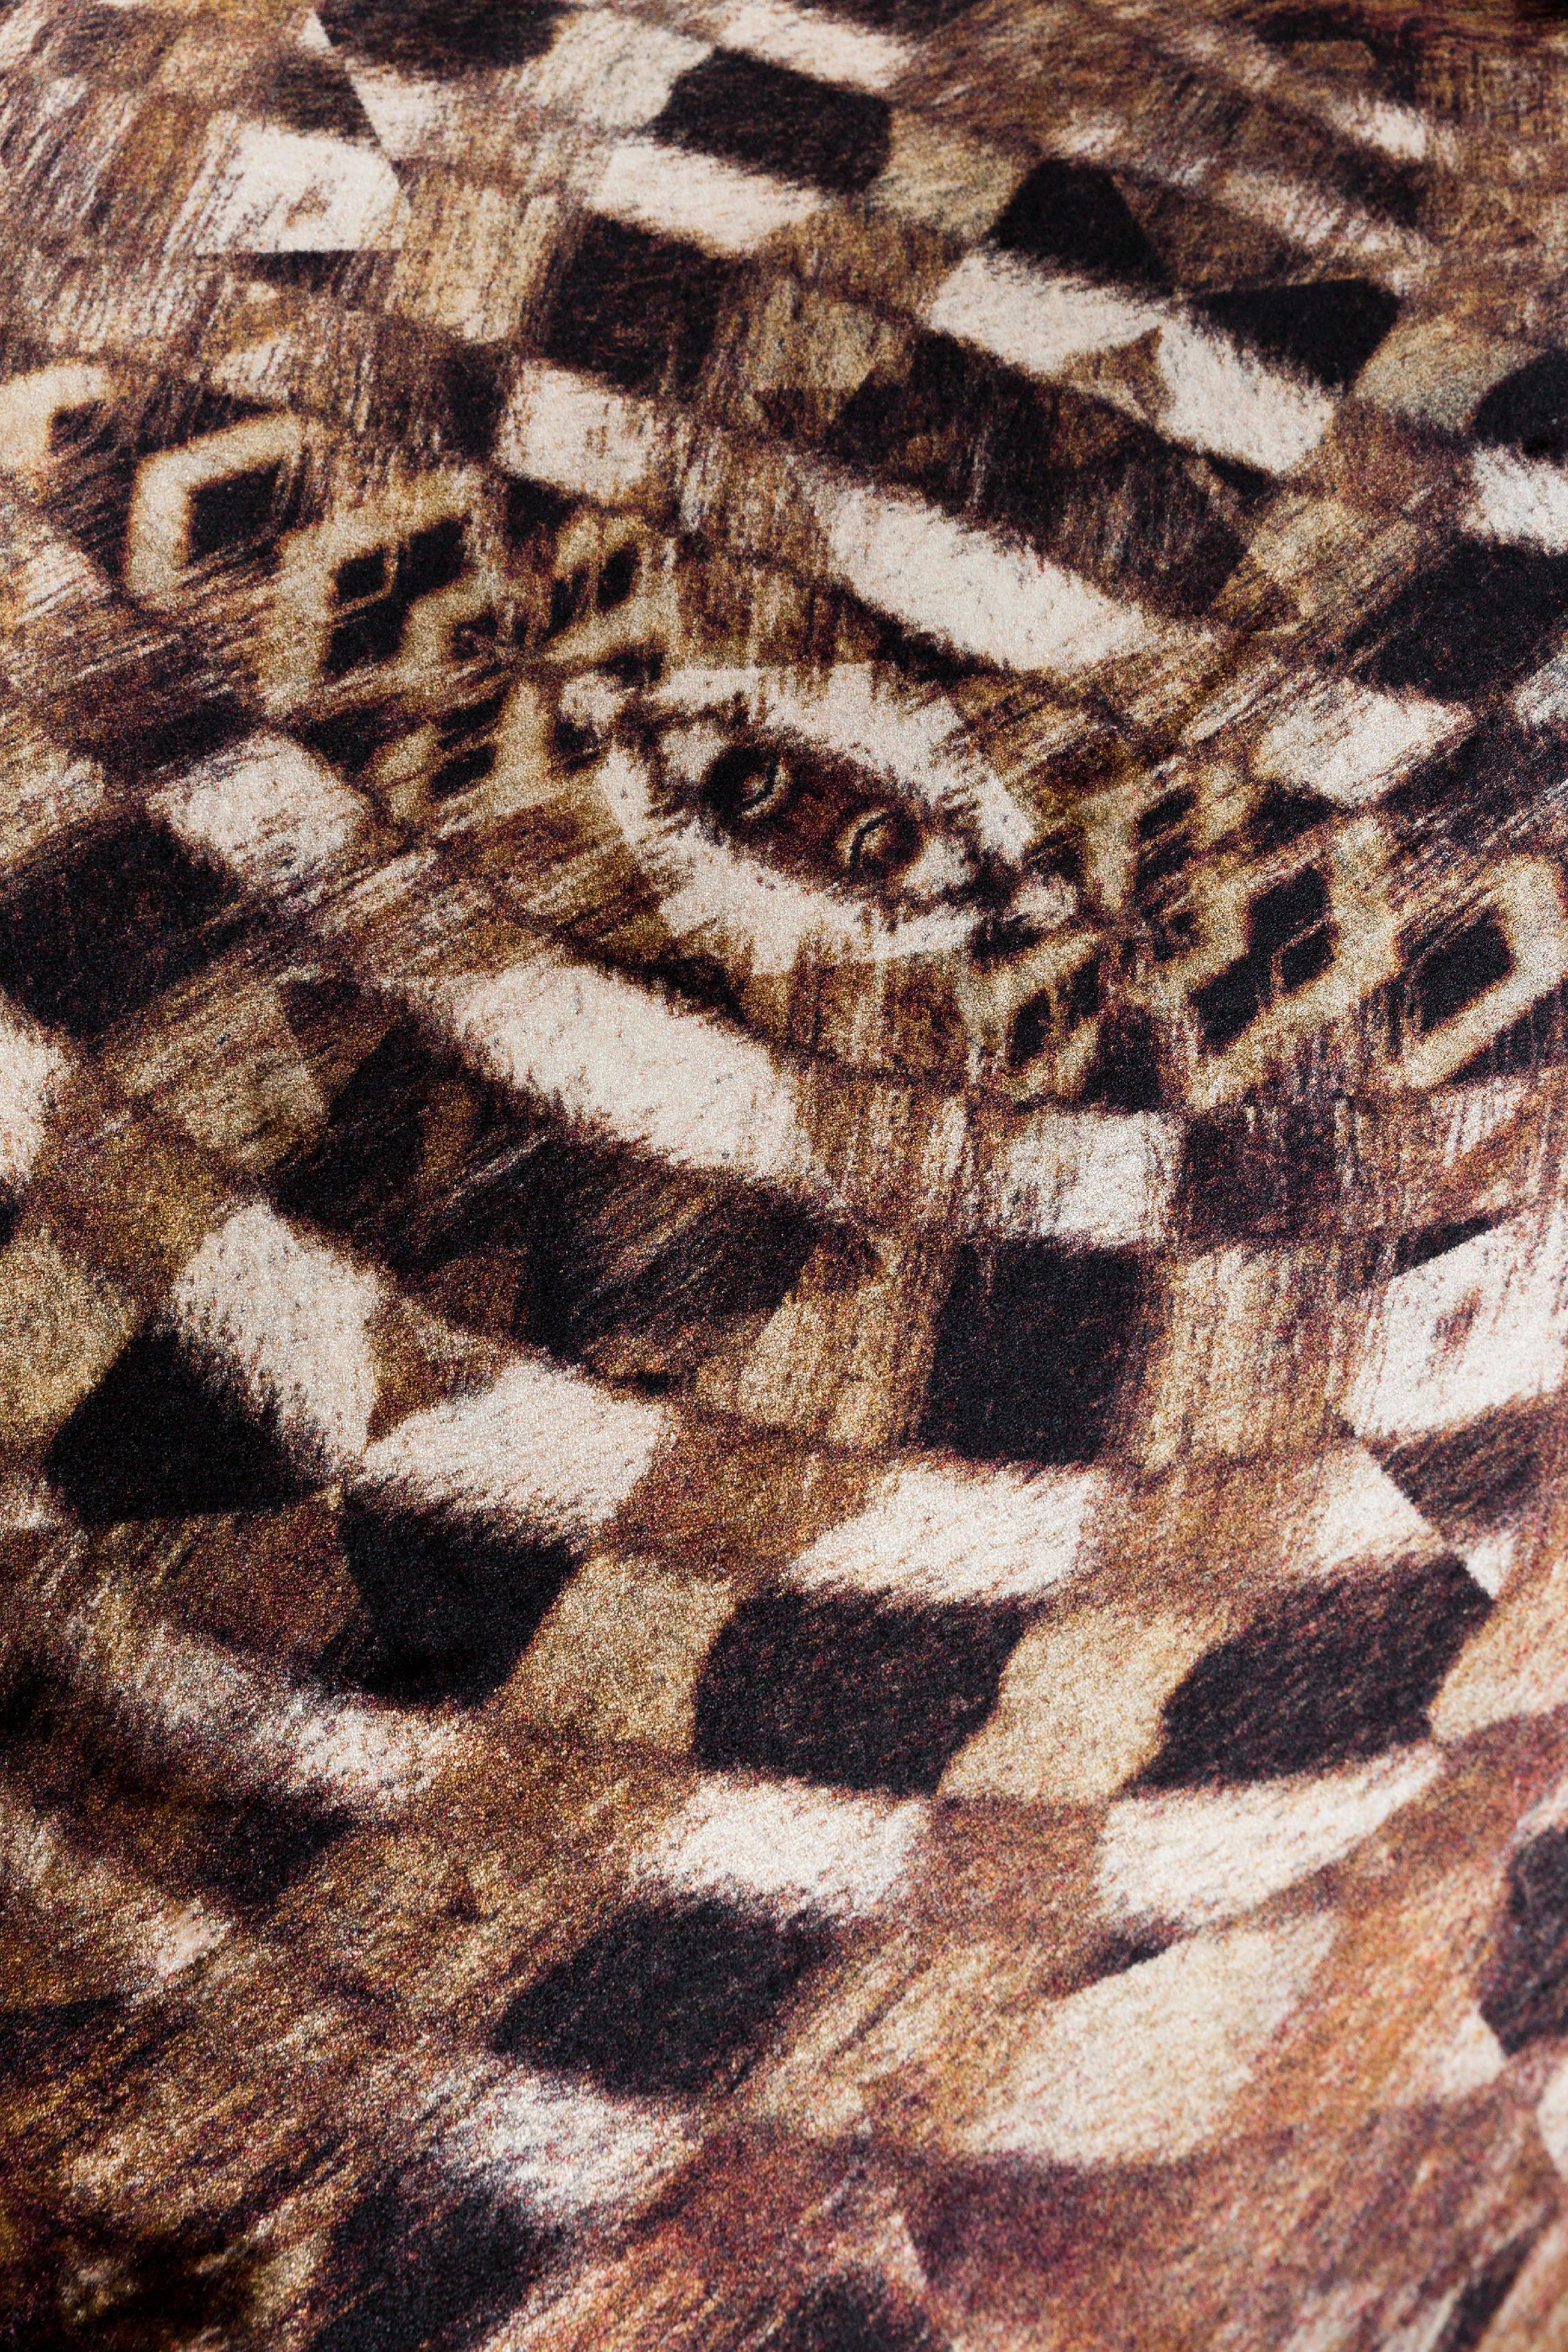 Moooi large extinct animals aristo quagga rug in wool.

